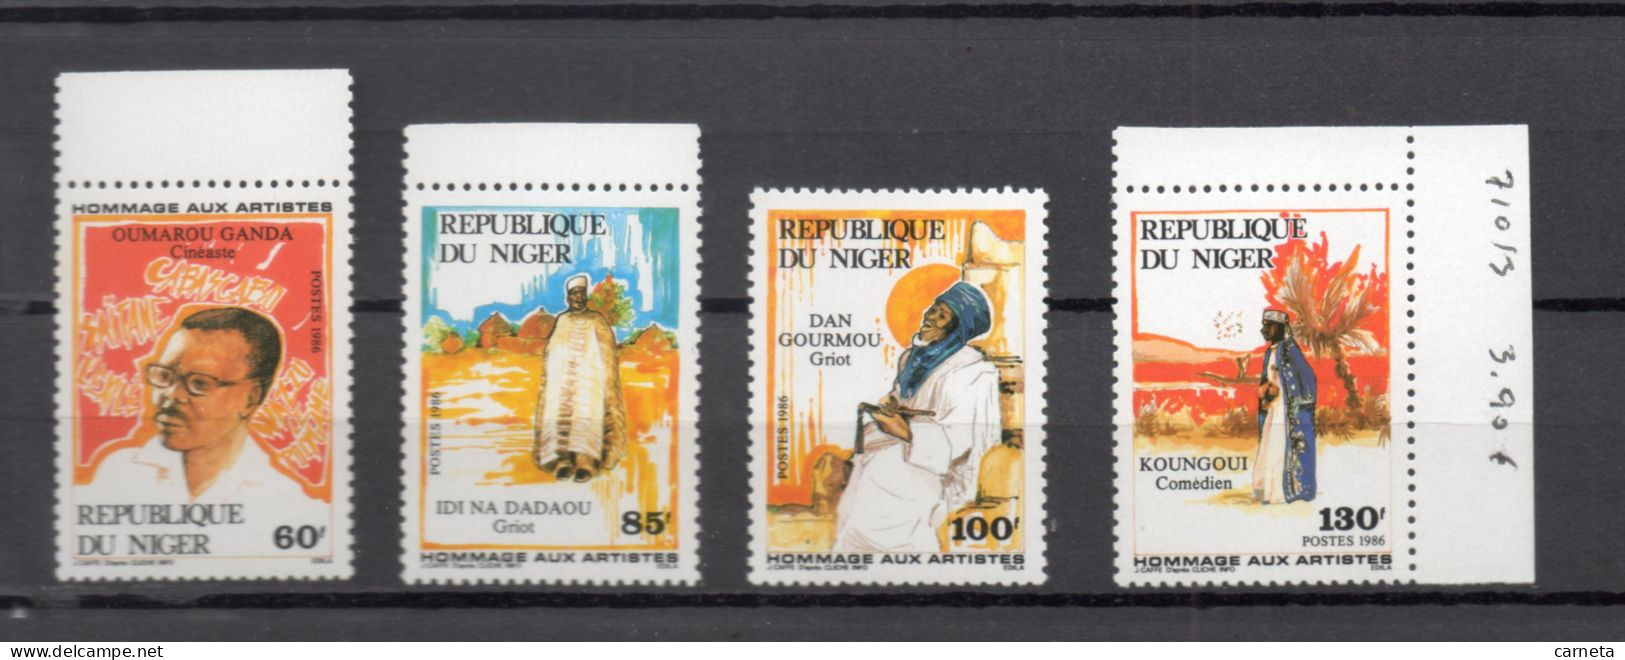 NIGER  N° 710 à 713    NEUFS SANS CHARNIERE  COTE 4.75€     CINEMA ARTISTE - Niger (1960-...)